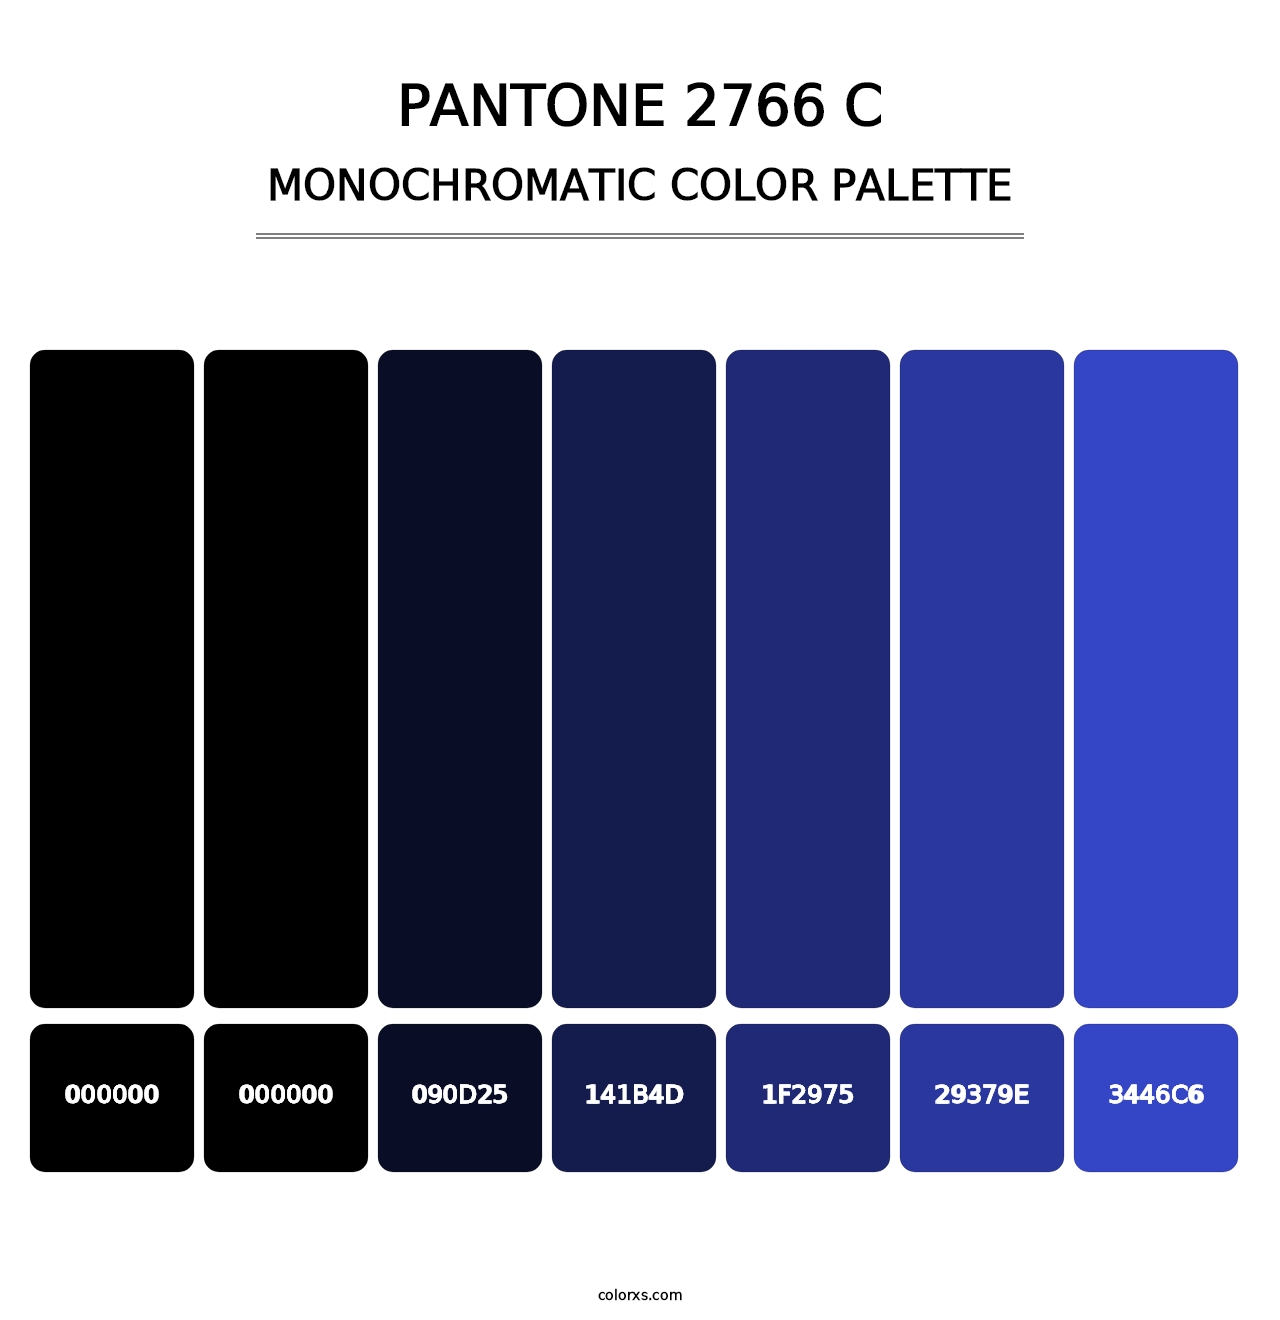 PANTONE 2766 C - Monochromatic Color Palette